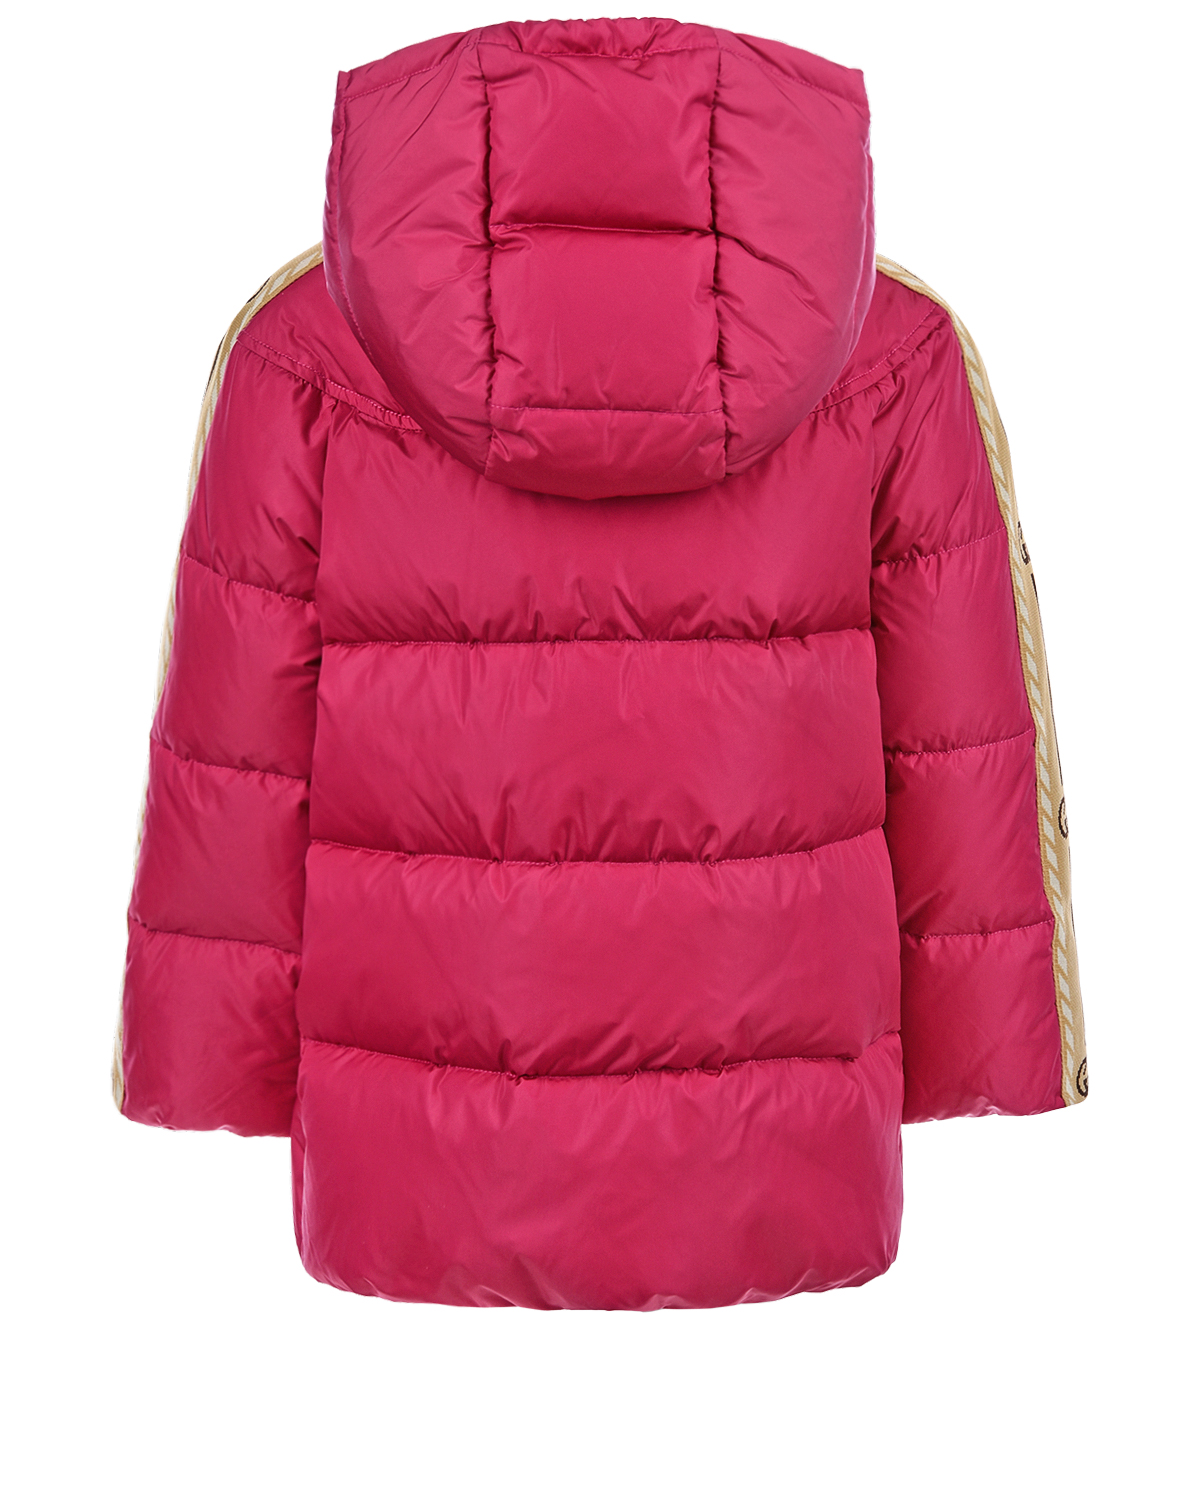 Куртка с трикотажными лампасами на рукавах GUCCI детская, размер 104, цвет розовый - фото 2